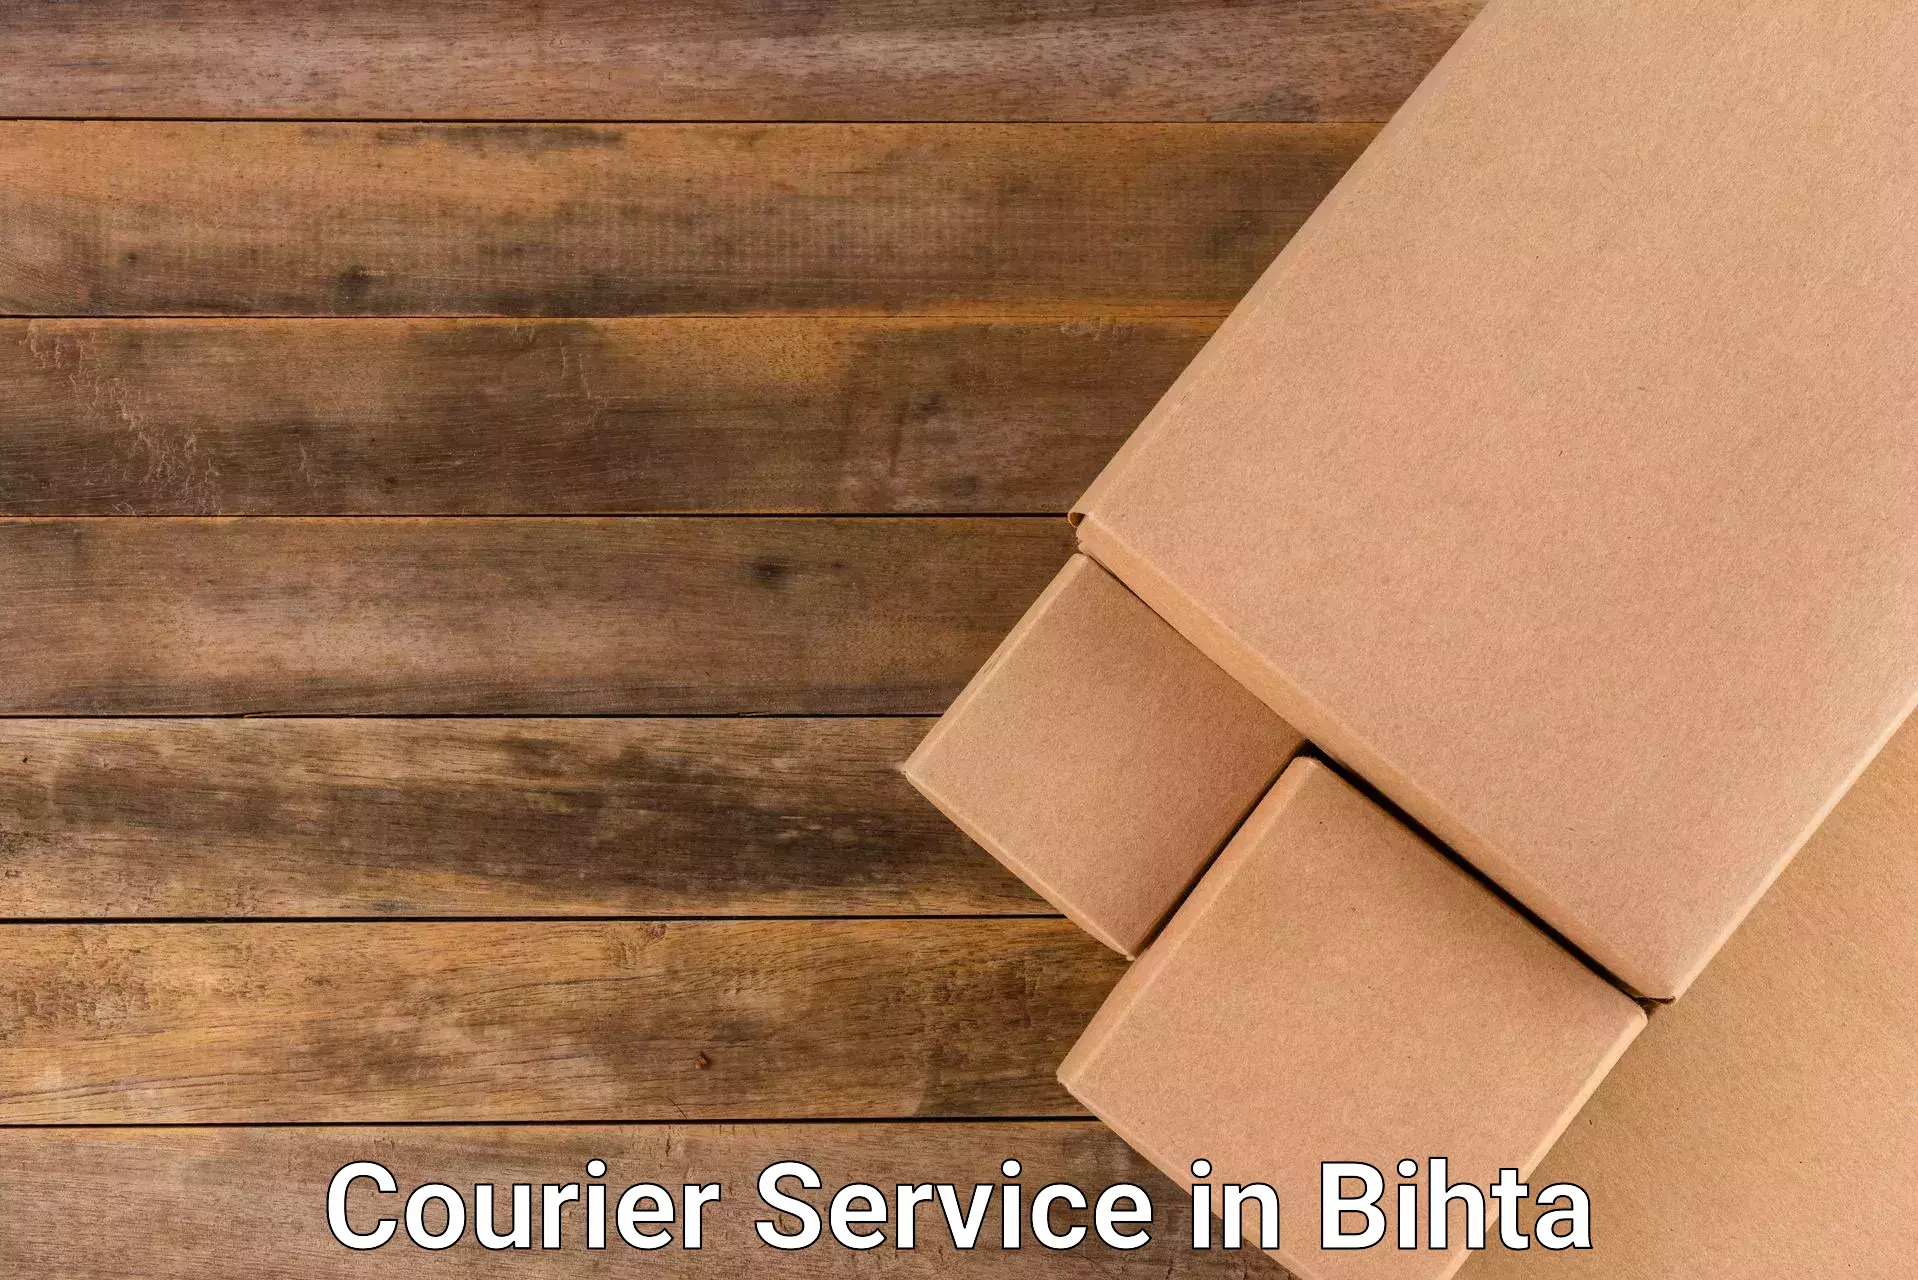 Reliable logistics providers in Bihta